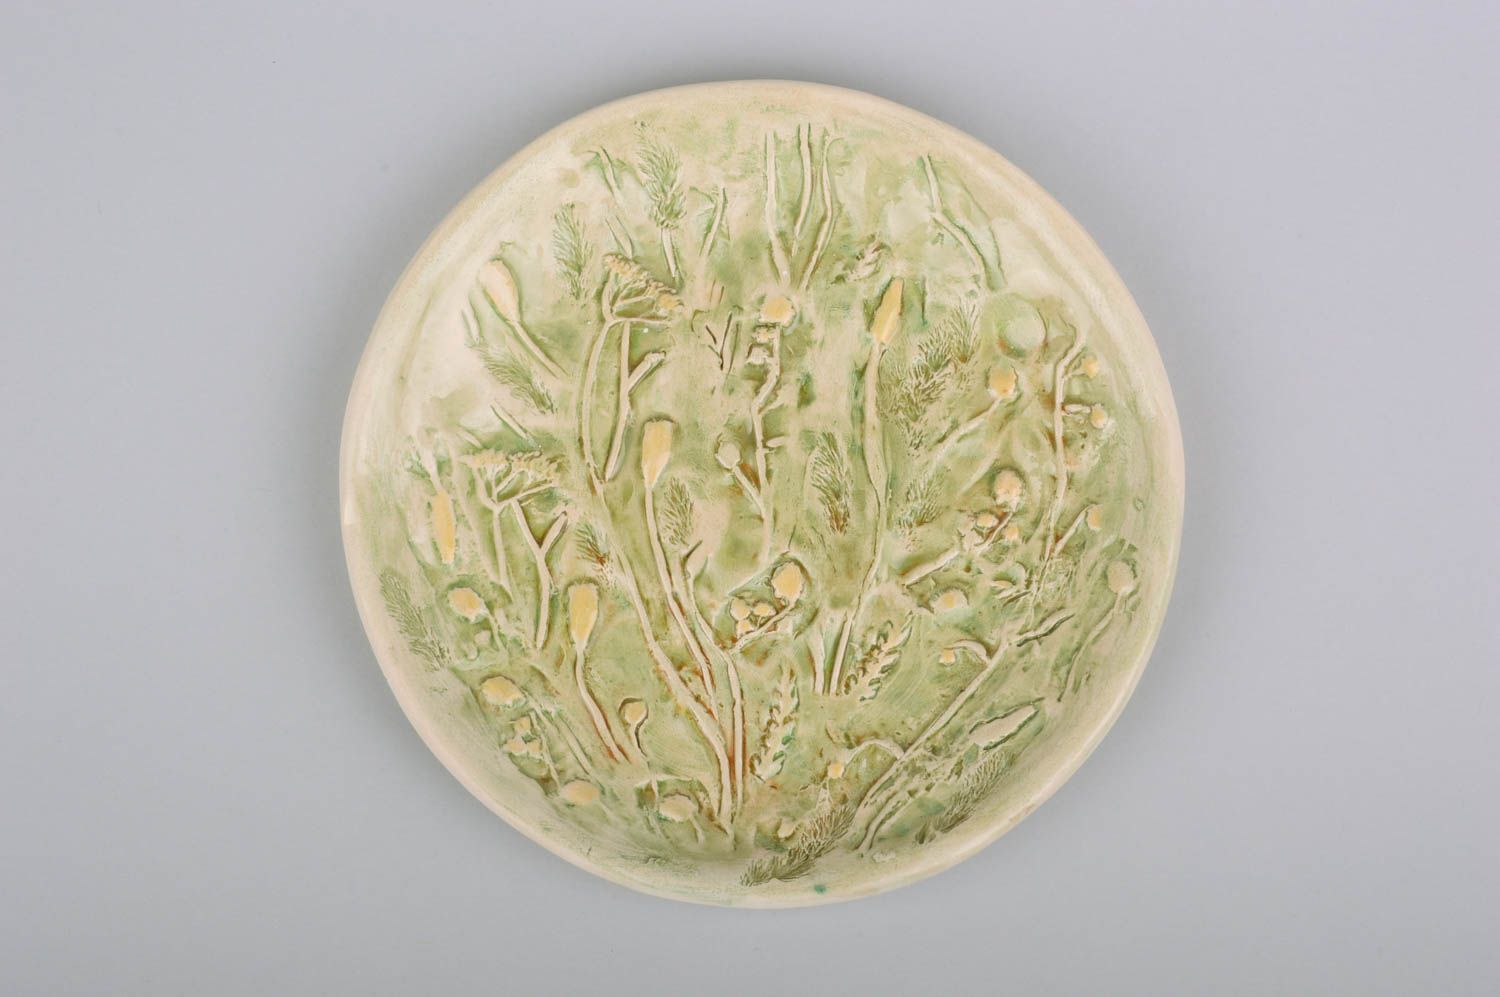 Assiette en argile peinte ronde vert clair avec motif en relief faite main photo 1